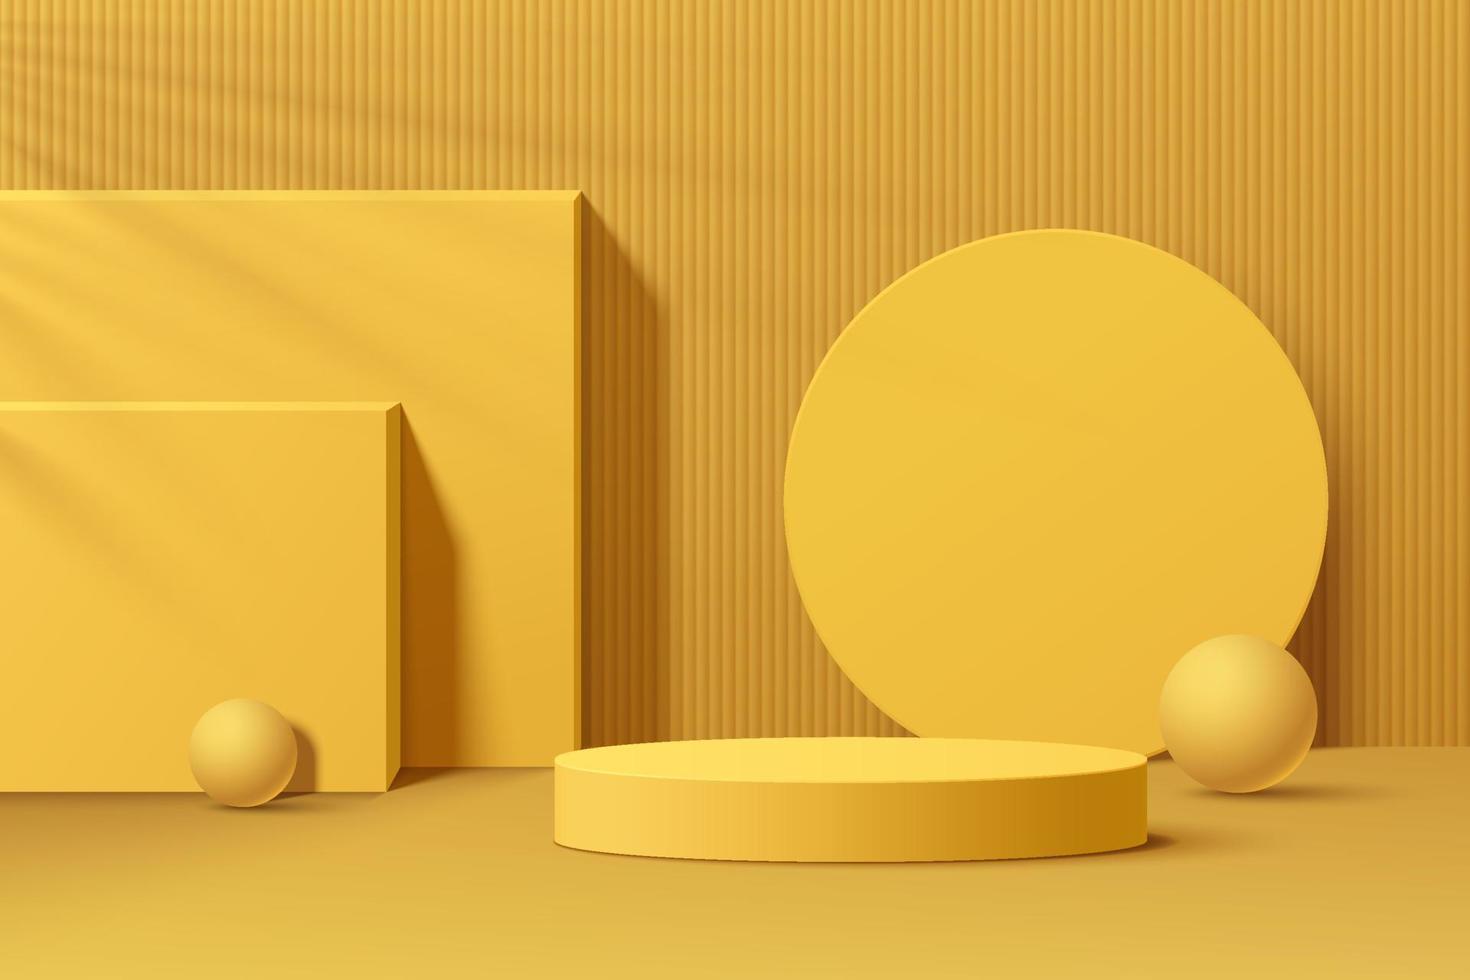 Pódio de pedestal de cilindro 3d amarelo realista com forma geométrica definir plano de fundo. cena mínima para vitrine de produtos, exibição de promoção. projeto abstrato da plataforma da sala do estúdio. ilustração vetorial. vetor